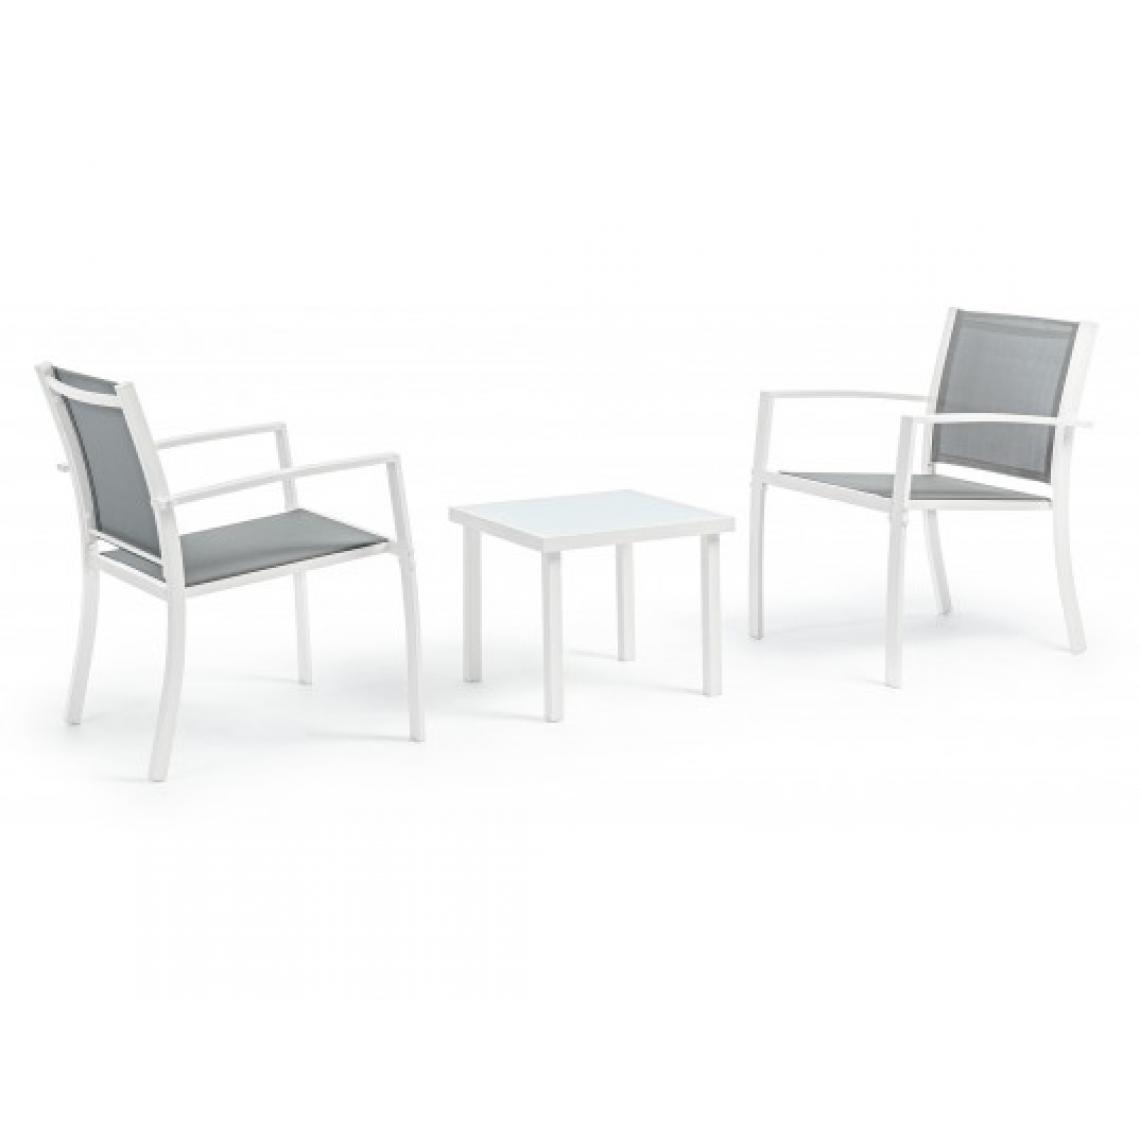 Bizzotto - Salon extérieur Auri 2 fauteuils + table basse blanc - Fauteuil de jardin